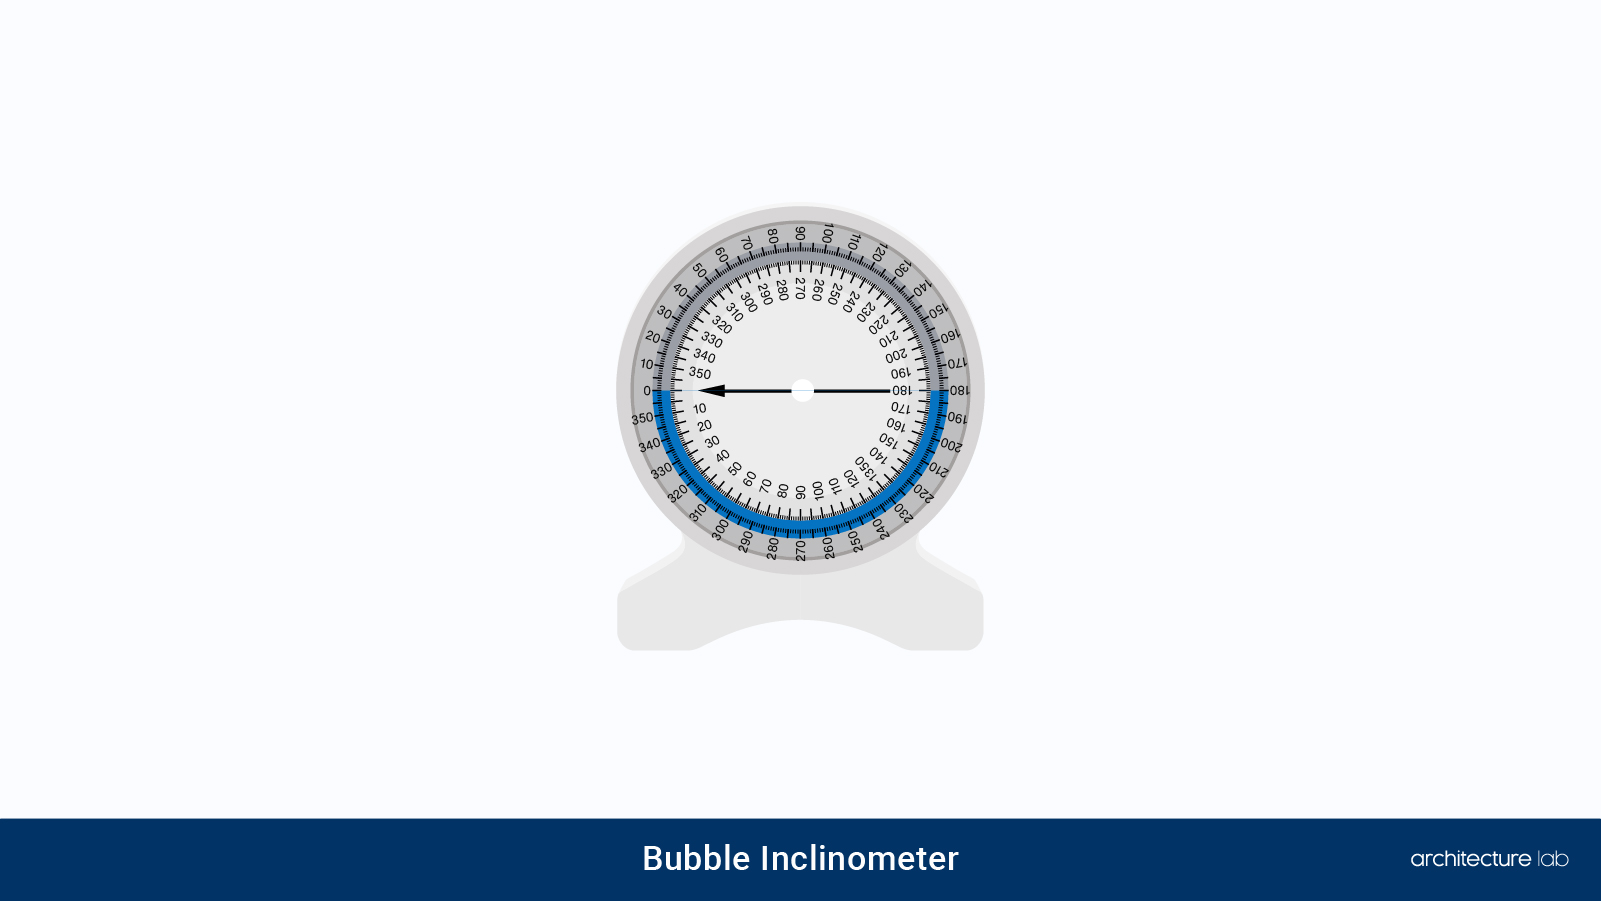 19. Bubble inclinometer